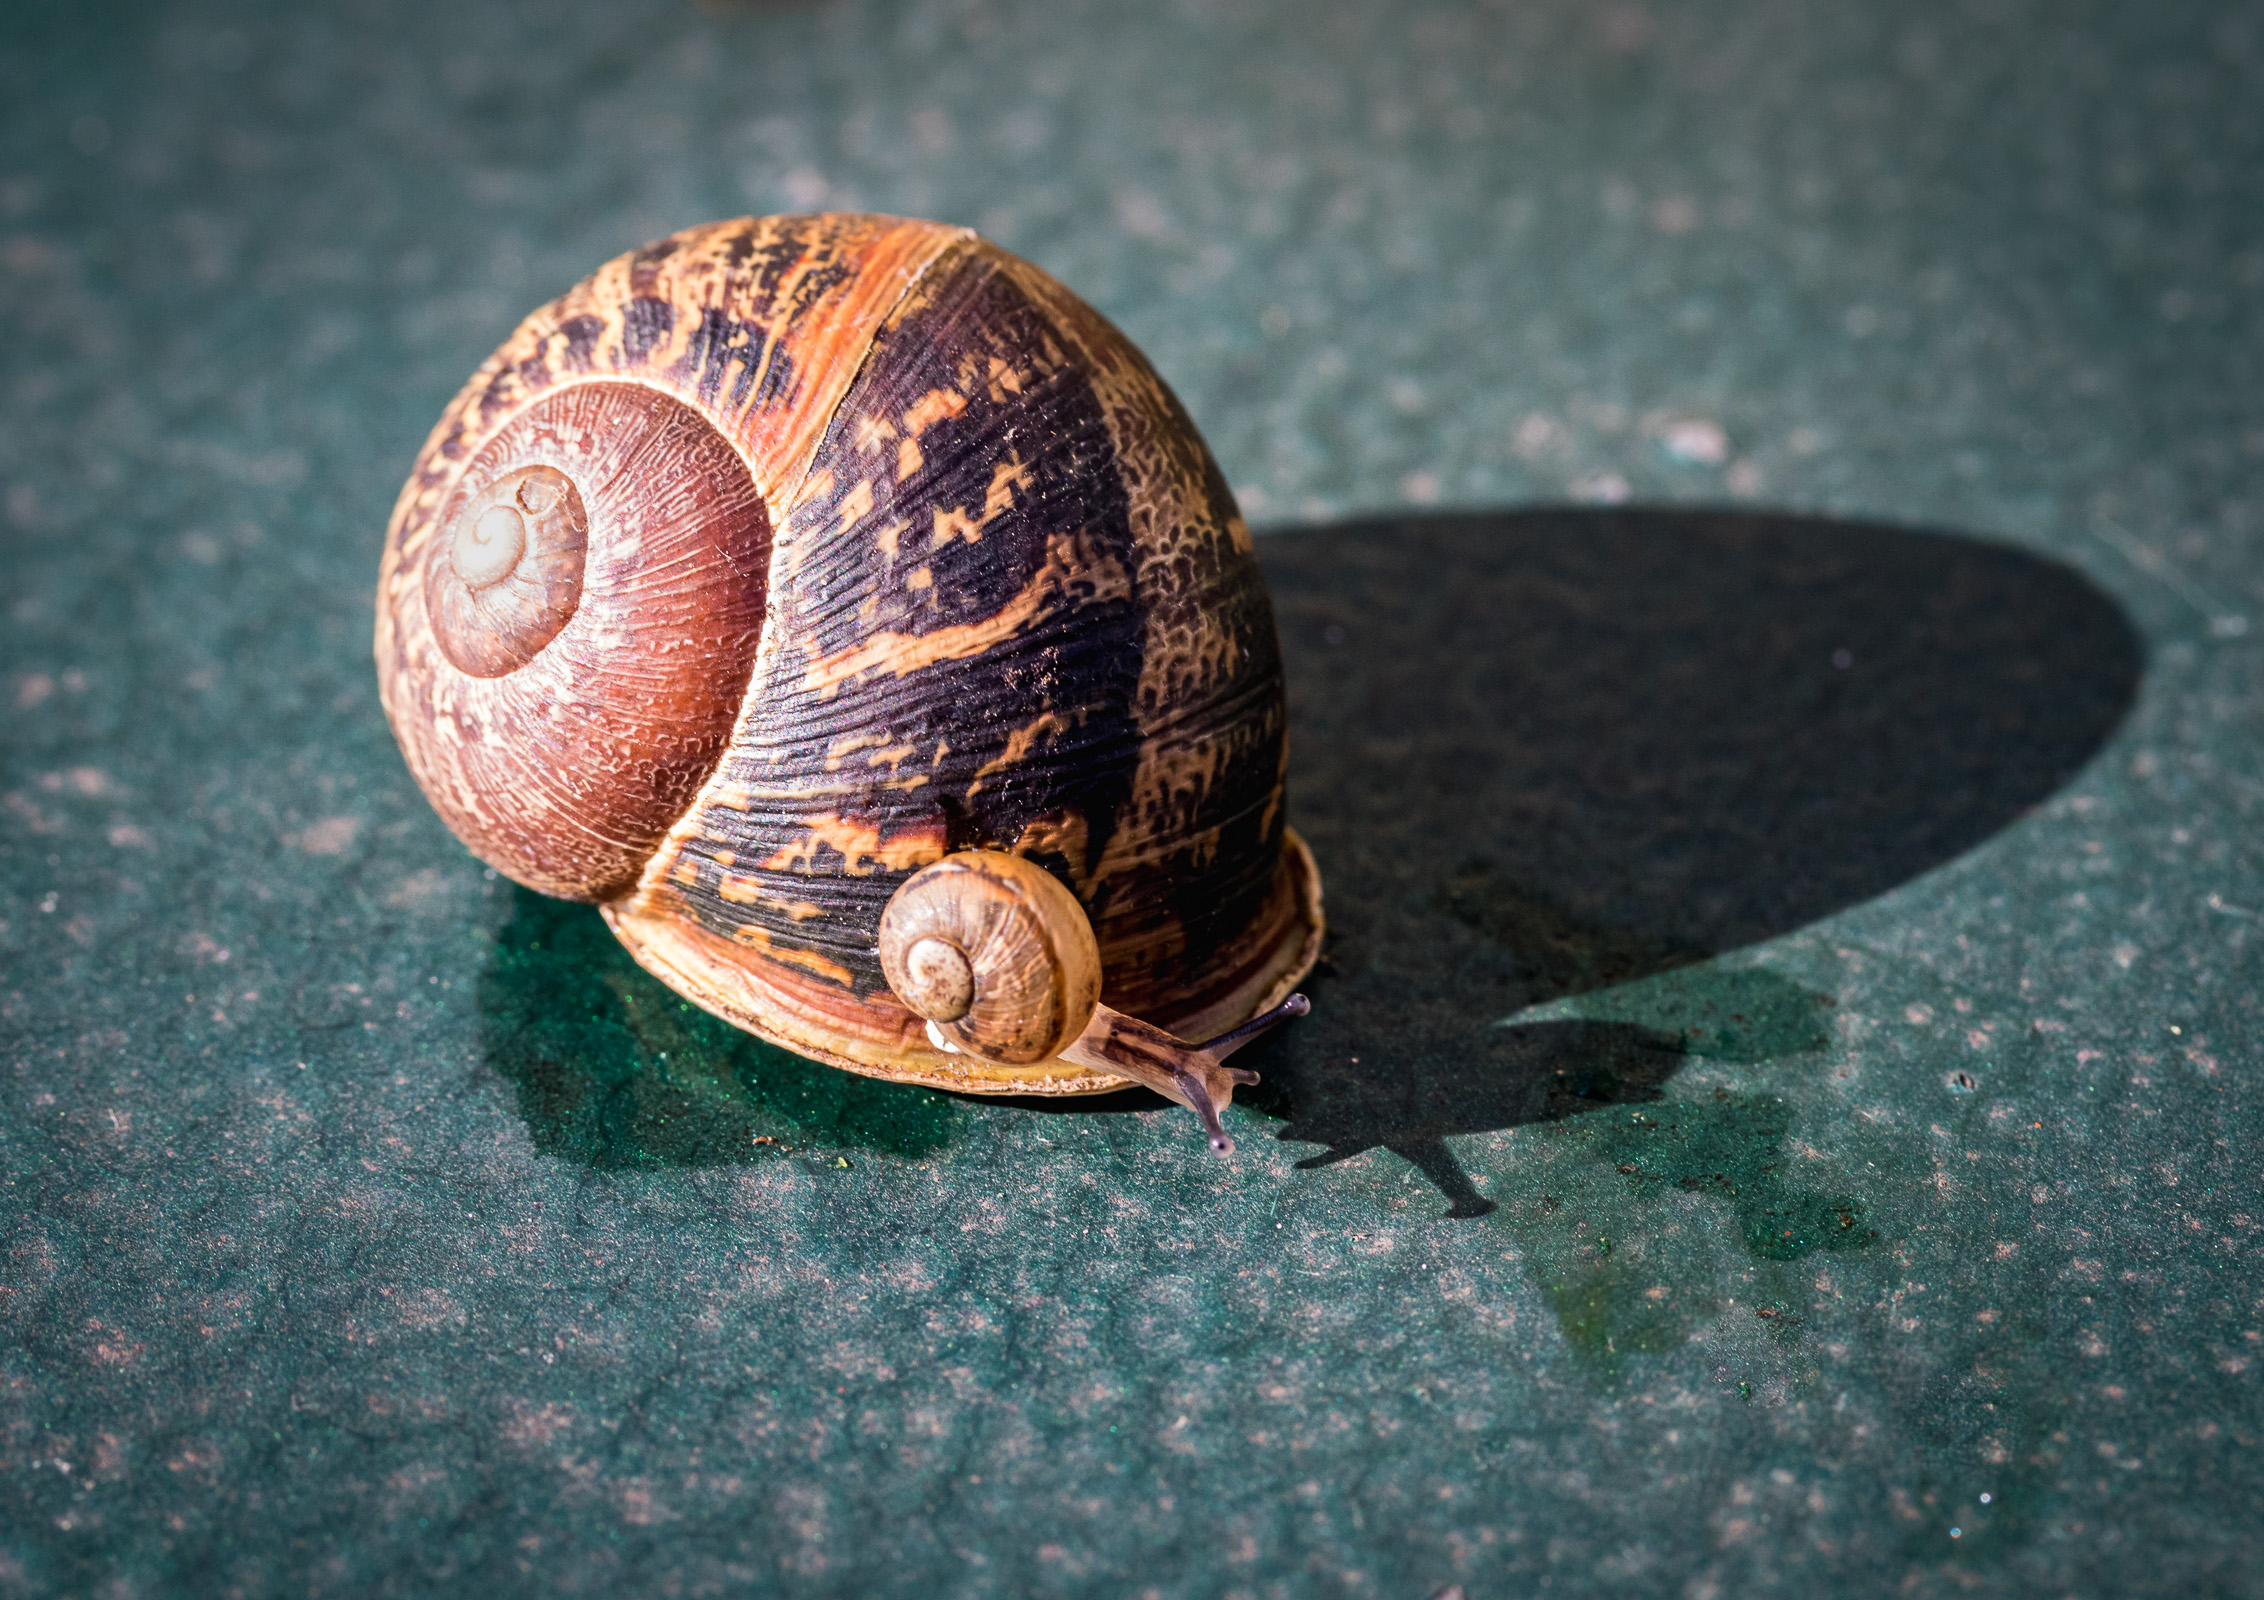 A snail on a snail ...